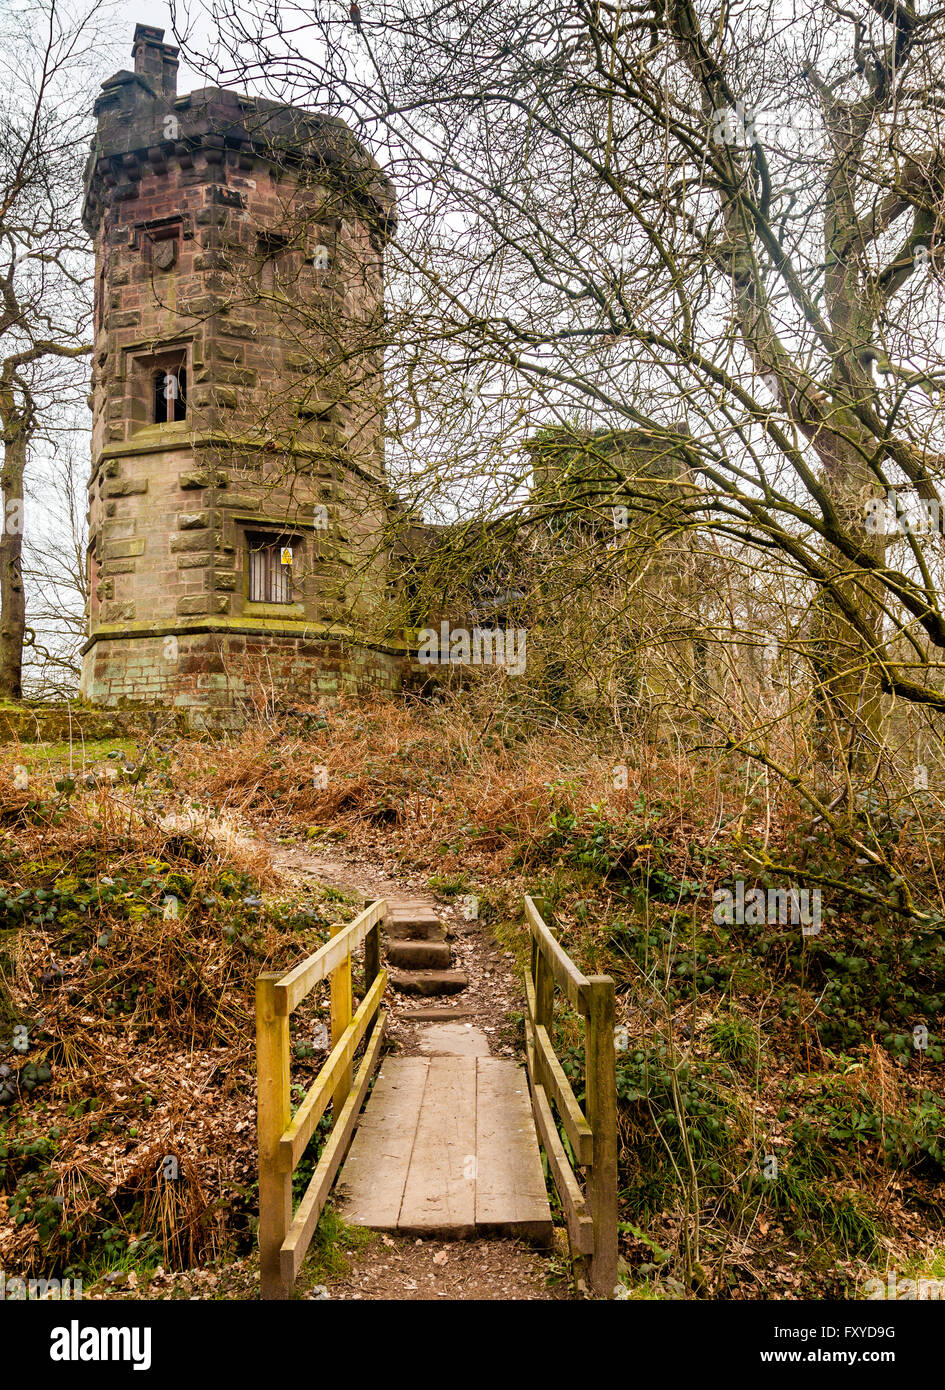 Tour du gardien également connu sous le nom de Warder's Lodge est un bâtiment historique sur les rives de Knypersley extérieure. Stoke on Trent en Angleterre Banque D'Images